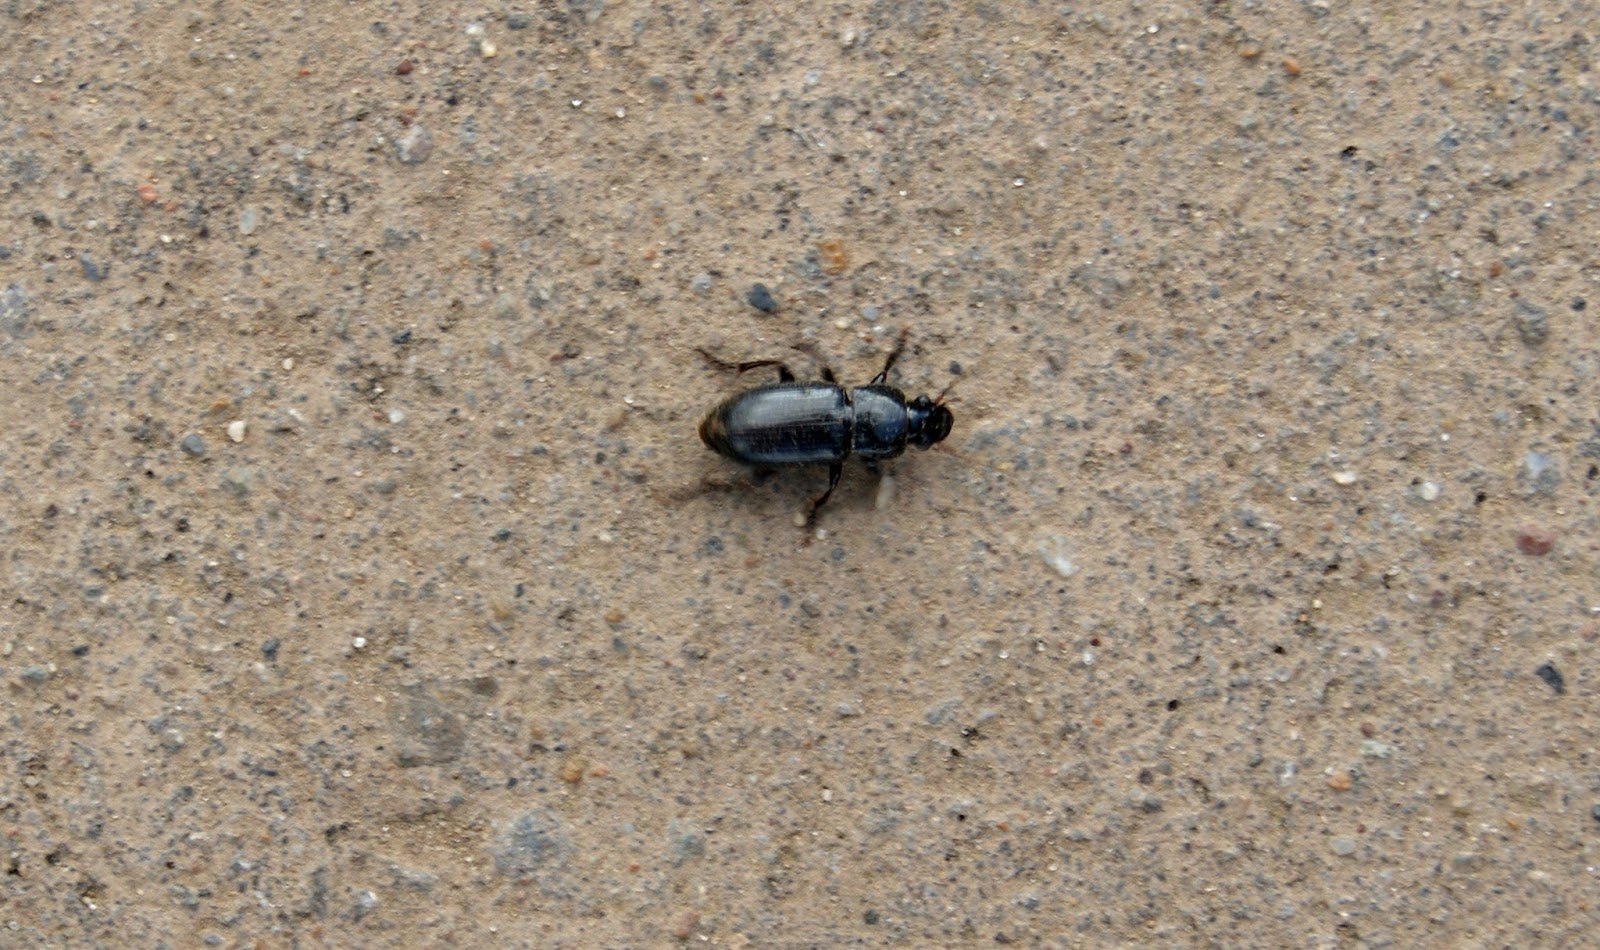 Черный жук похожий на таракана. Чёрный Жук похожий на таракана. Черные жуки похожие на тараканов. Чёрные жуки в квартире похожие на тараканов. Жук на асфальте.